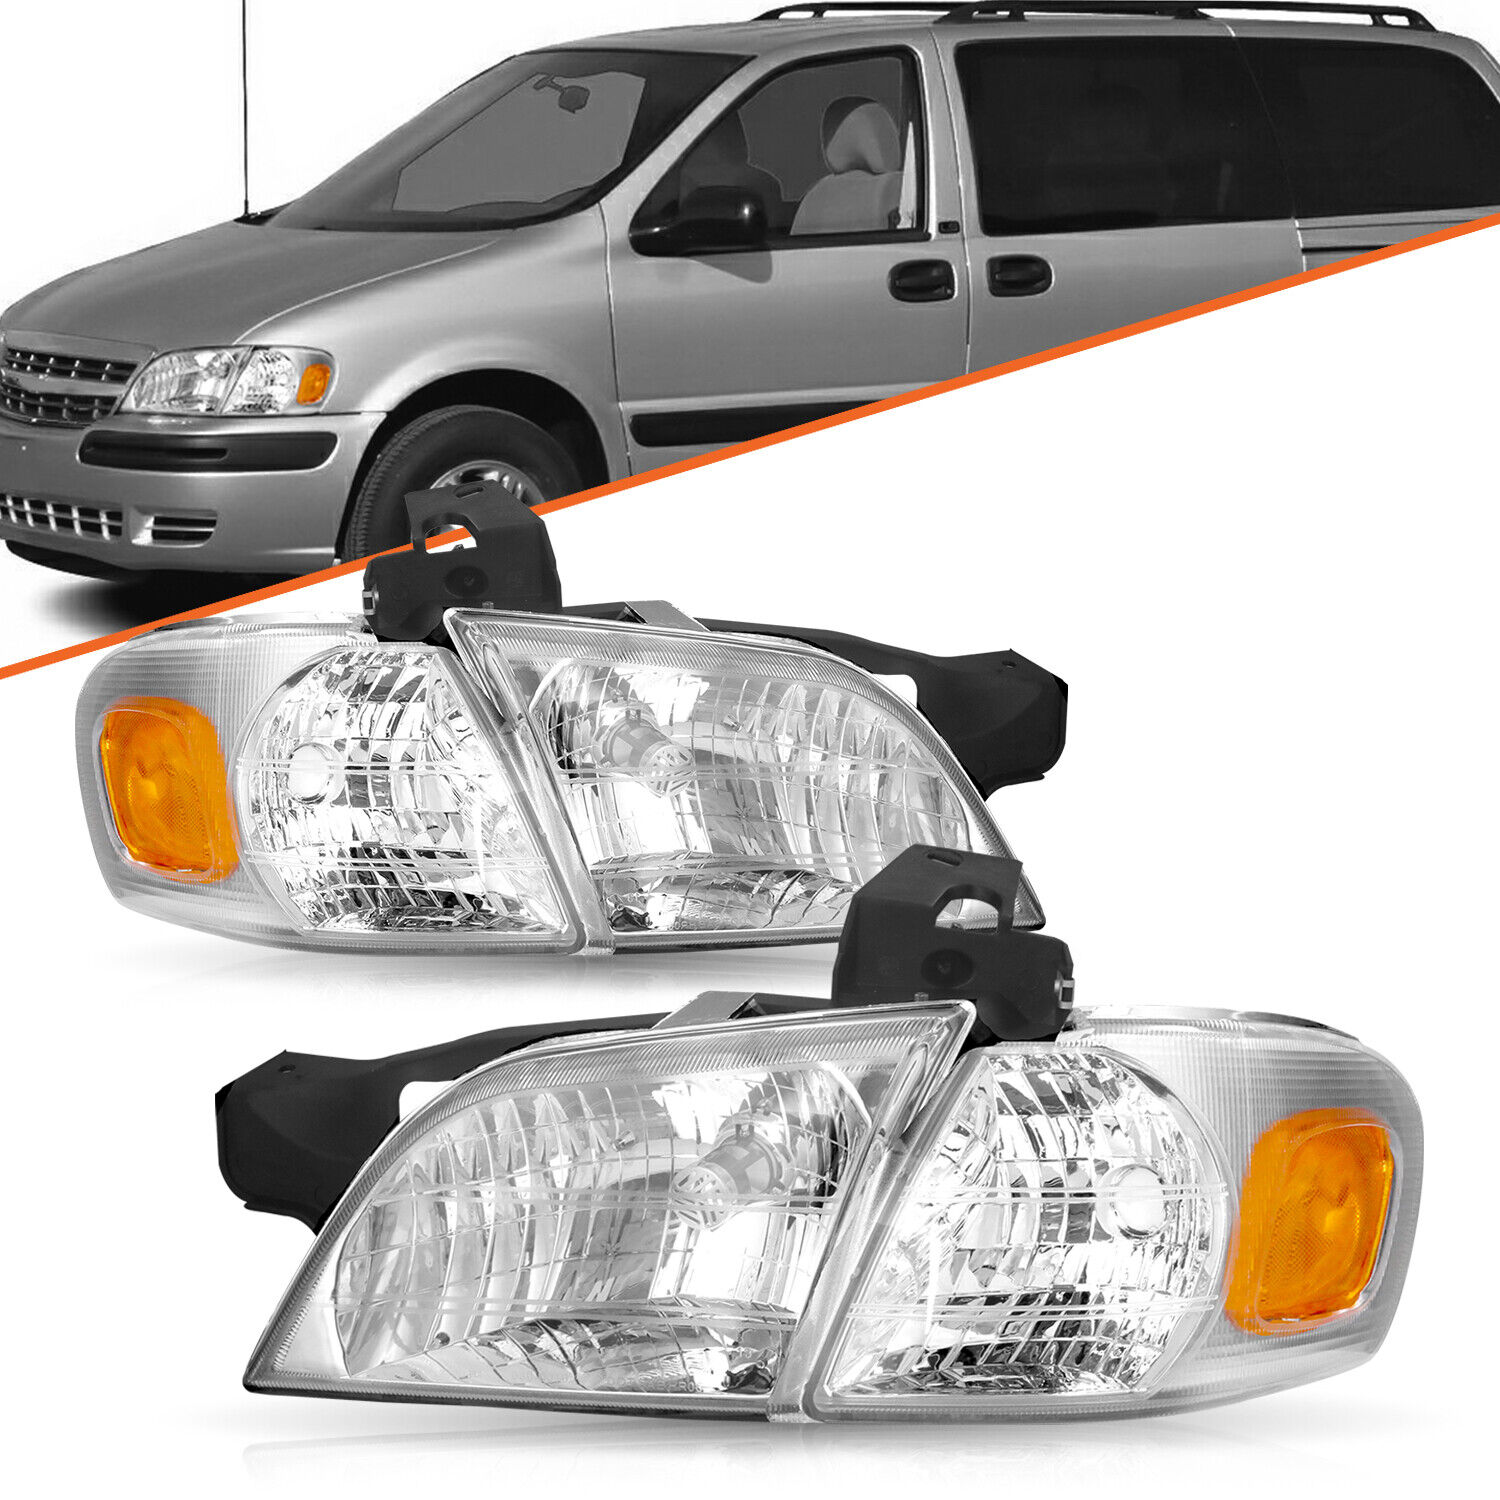 For 1997-2005 Pontiac Montana Chevy Venture Silhouette Chrome Headlight Headlamp